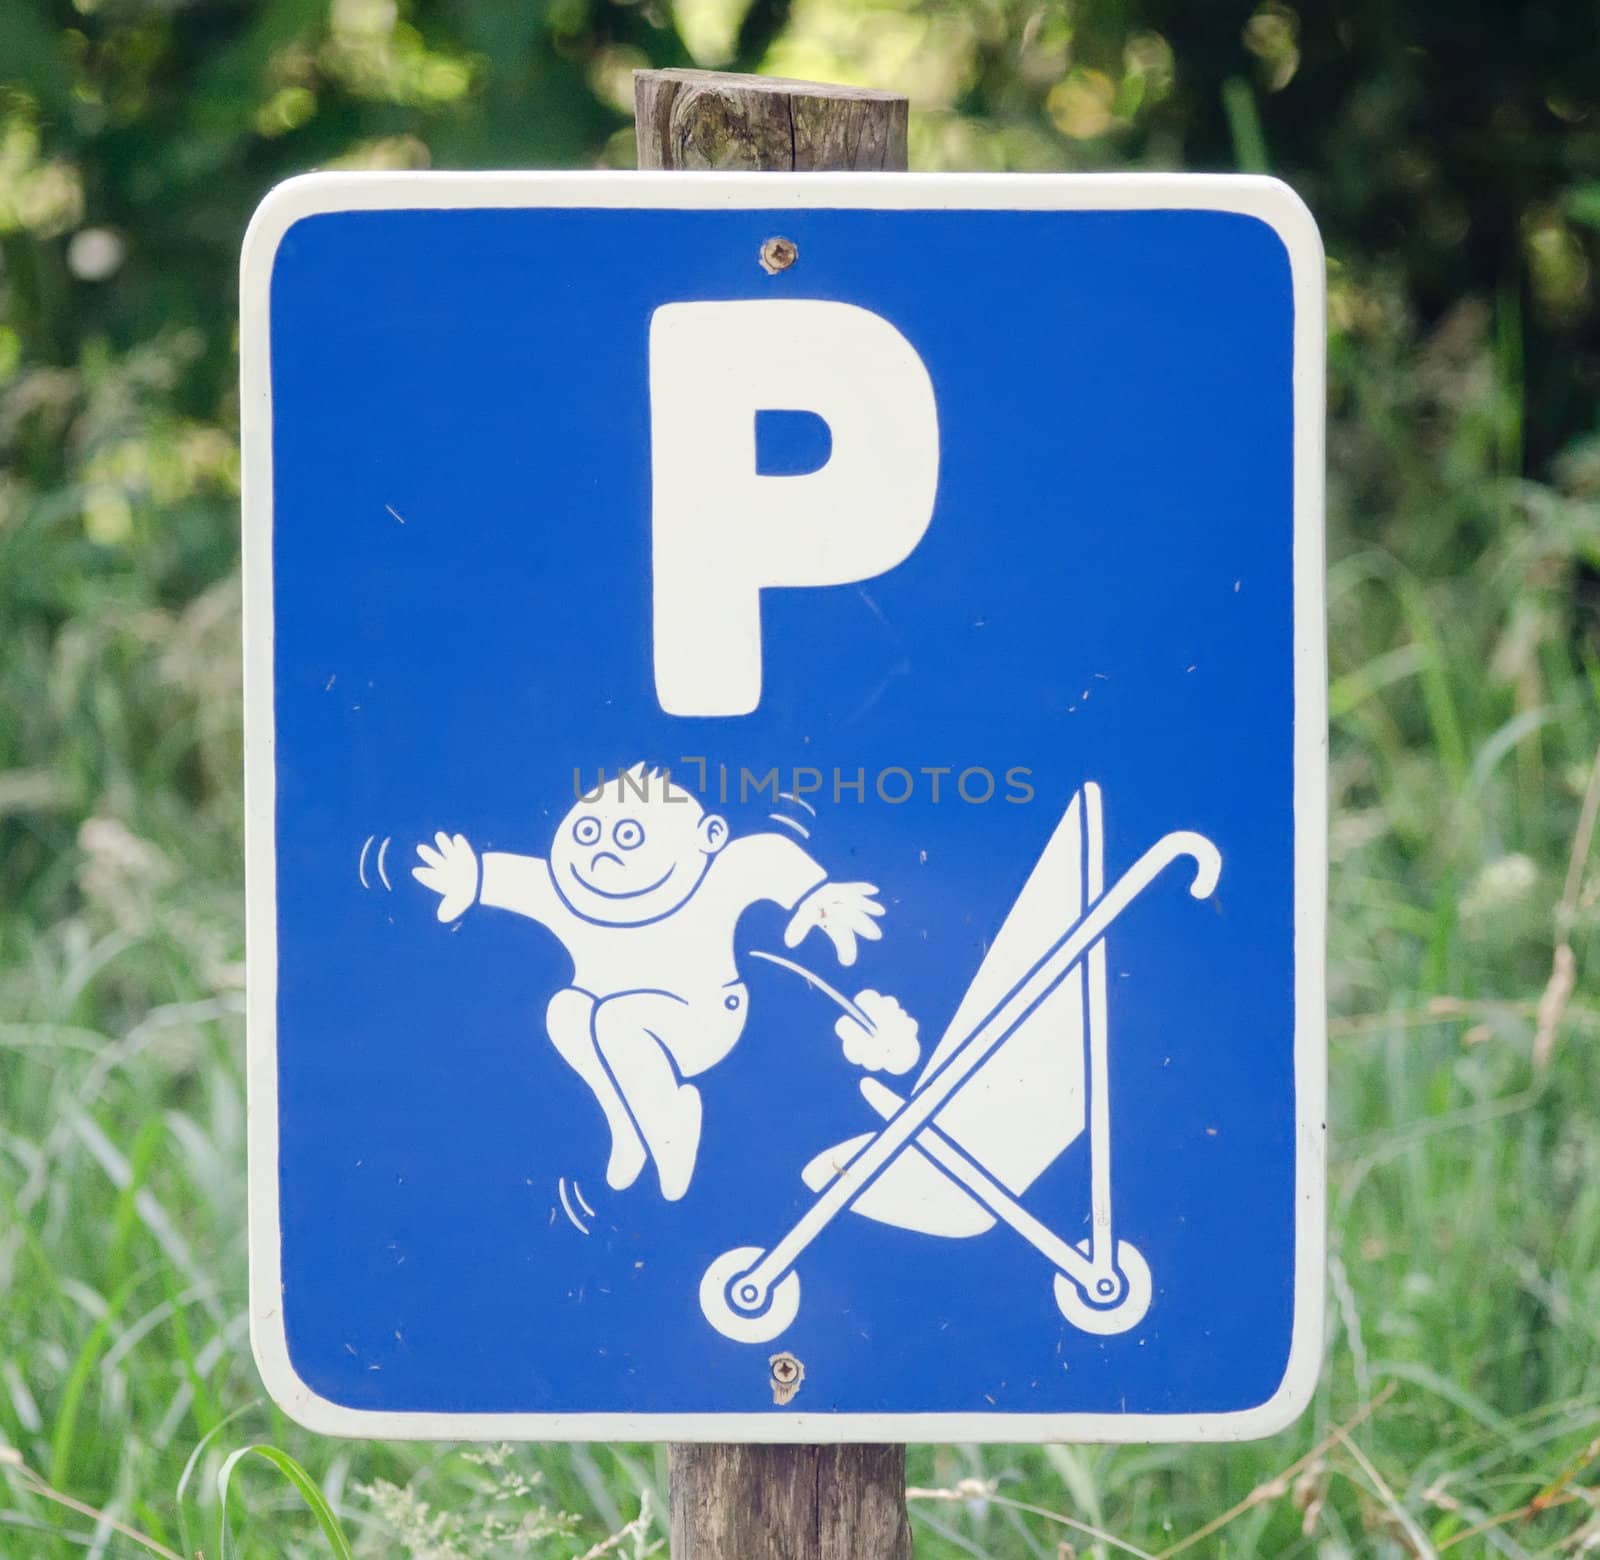 parking for stroller